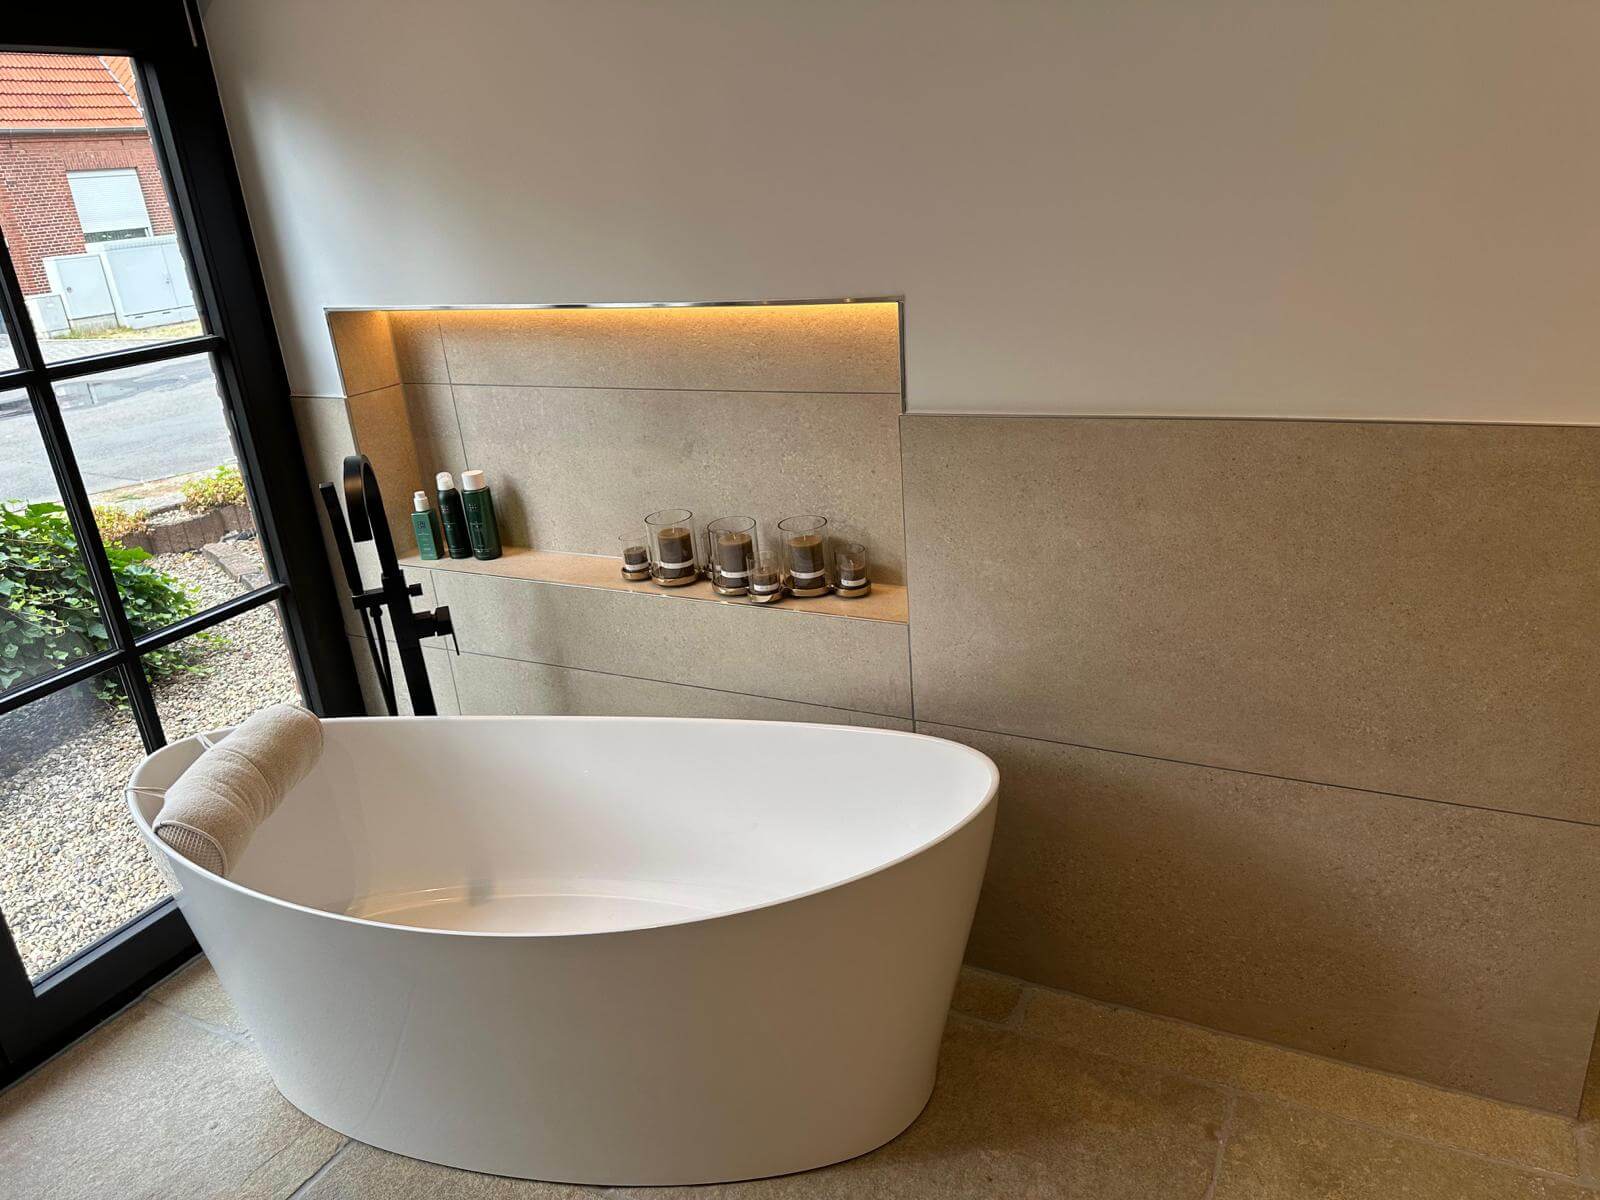 Badewanne neben einer Wand aus Sandstein mit eingebauter und beleuchtetet Ablage, Blick nach draußen